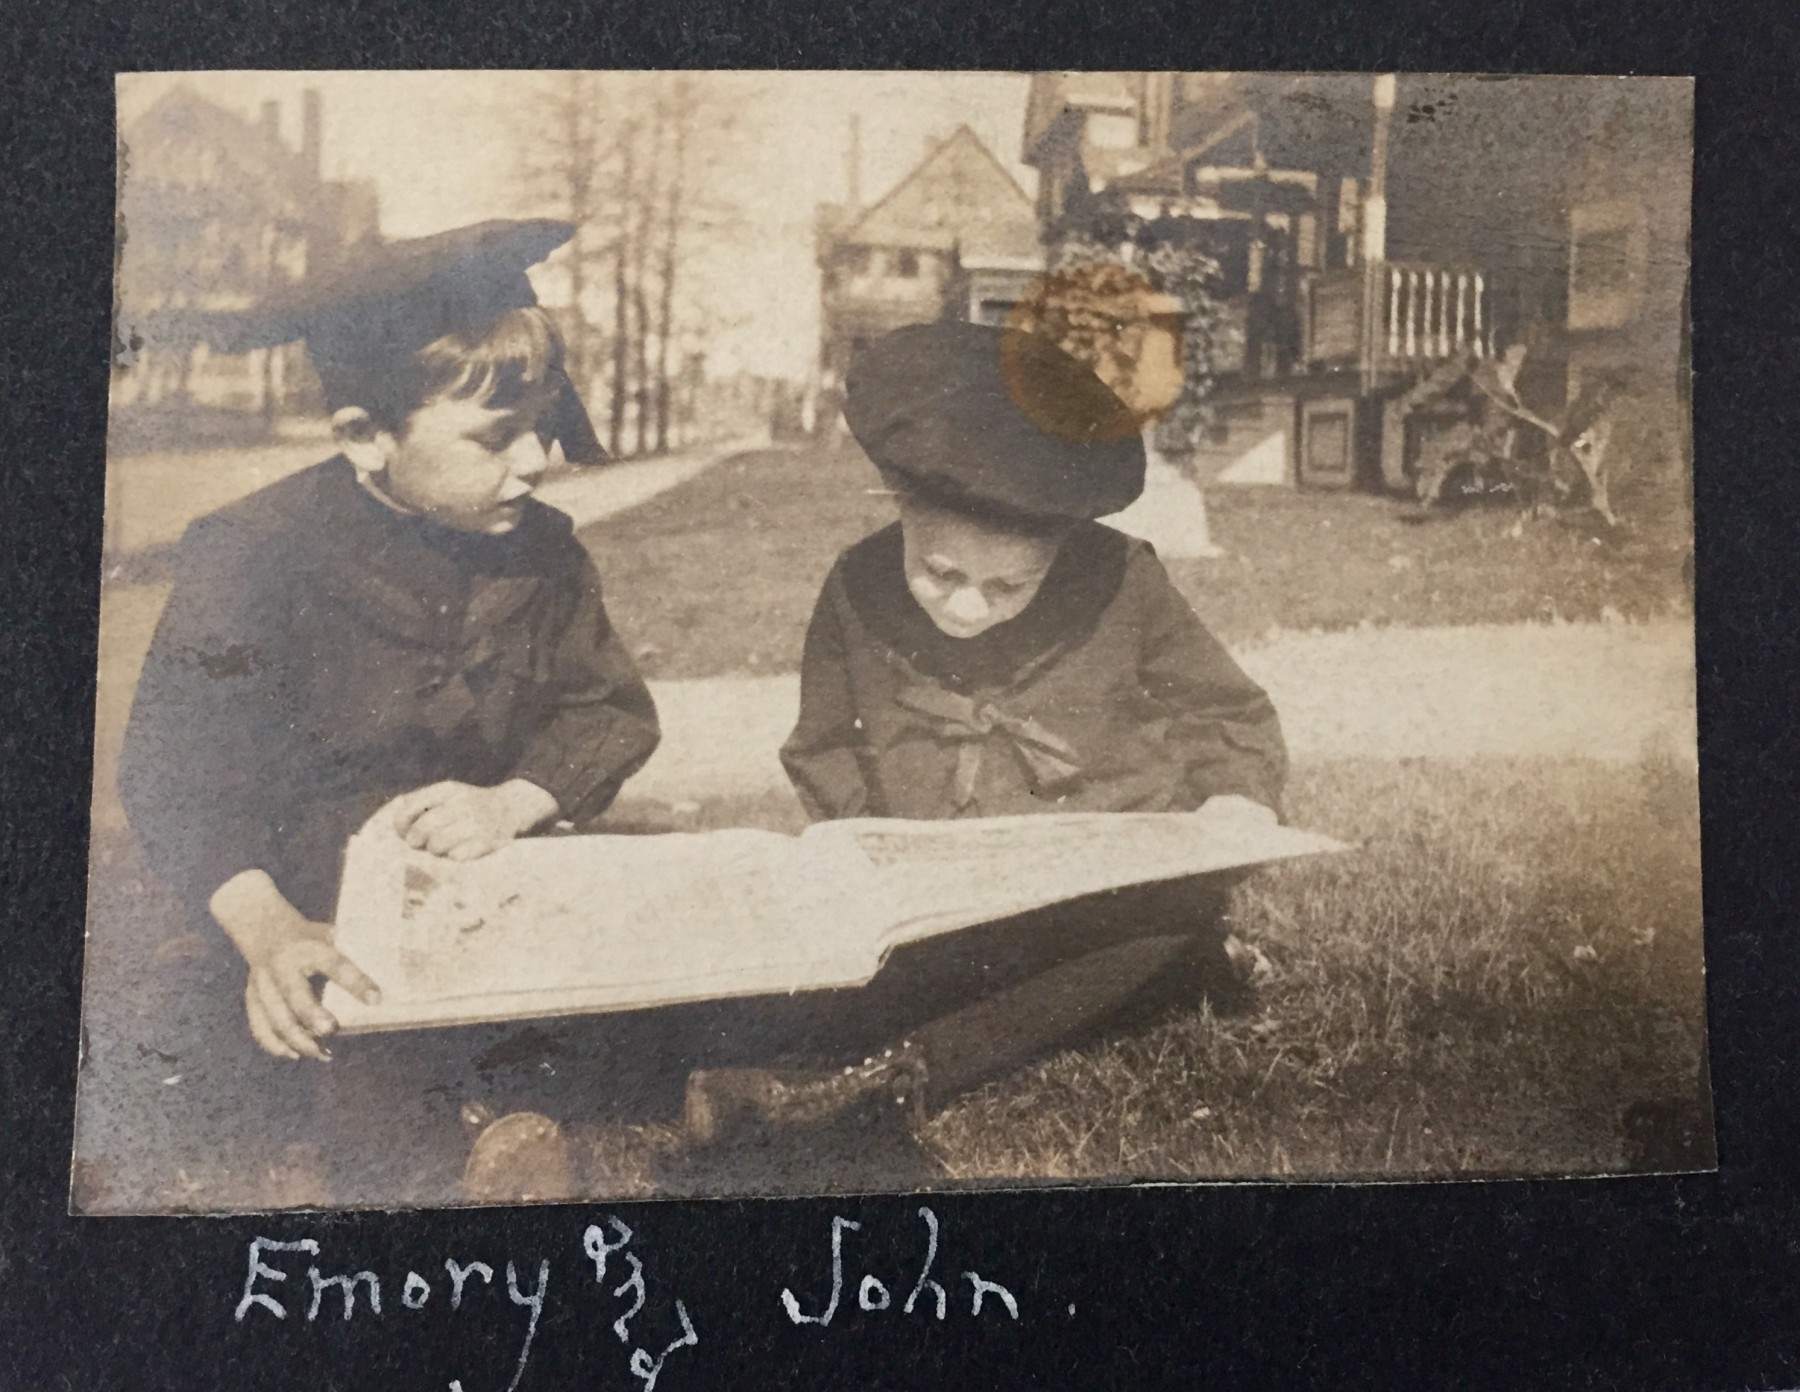 John & Emory Wright